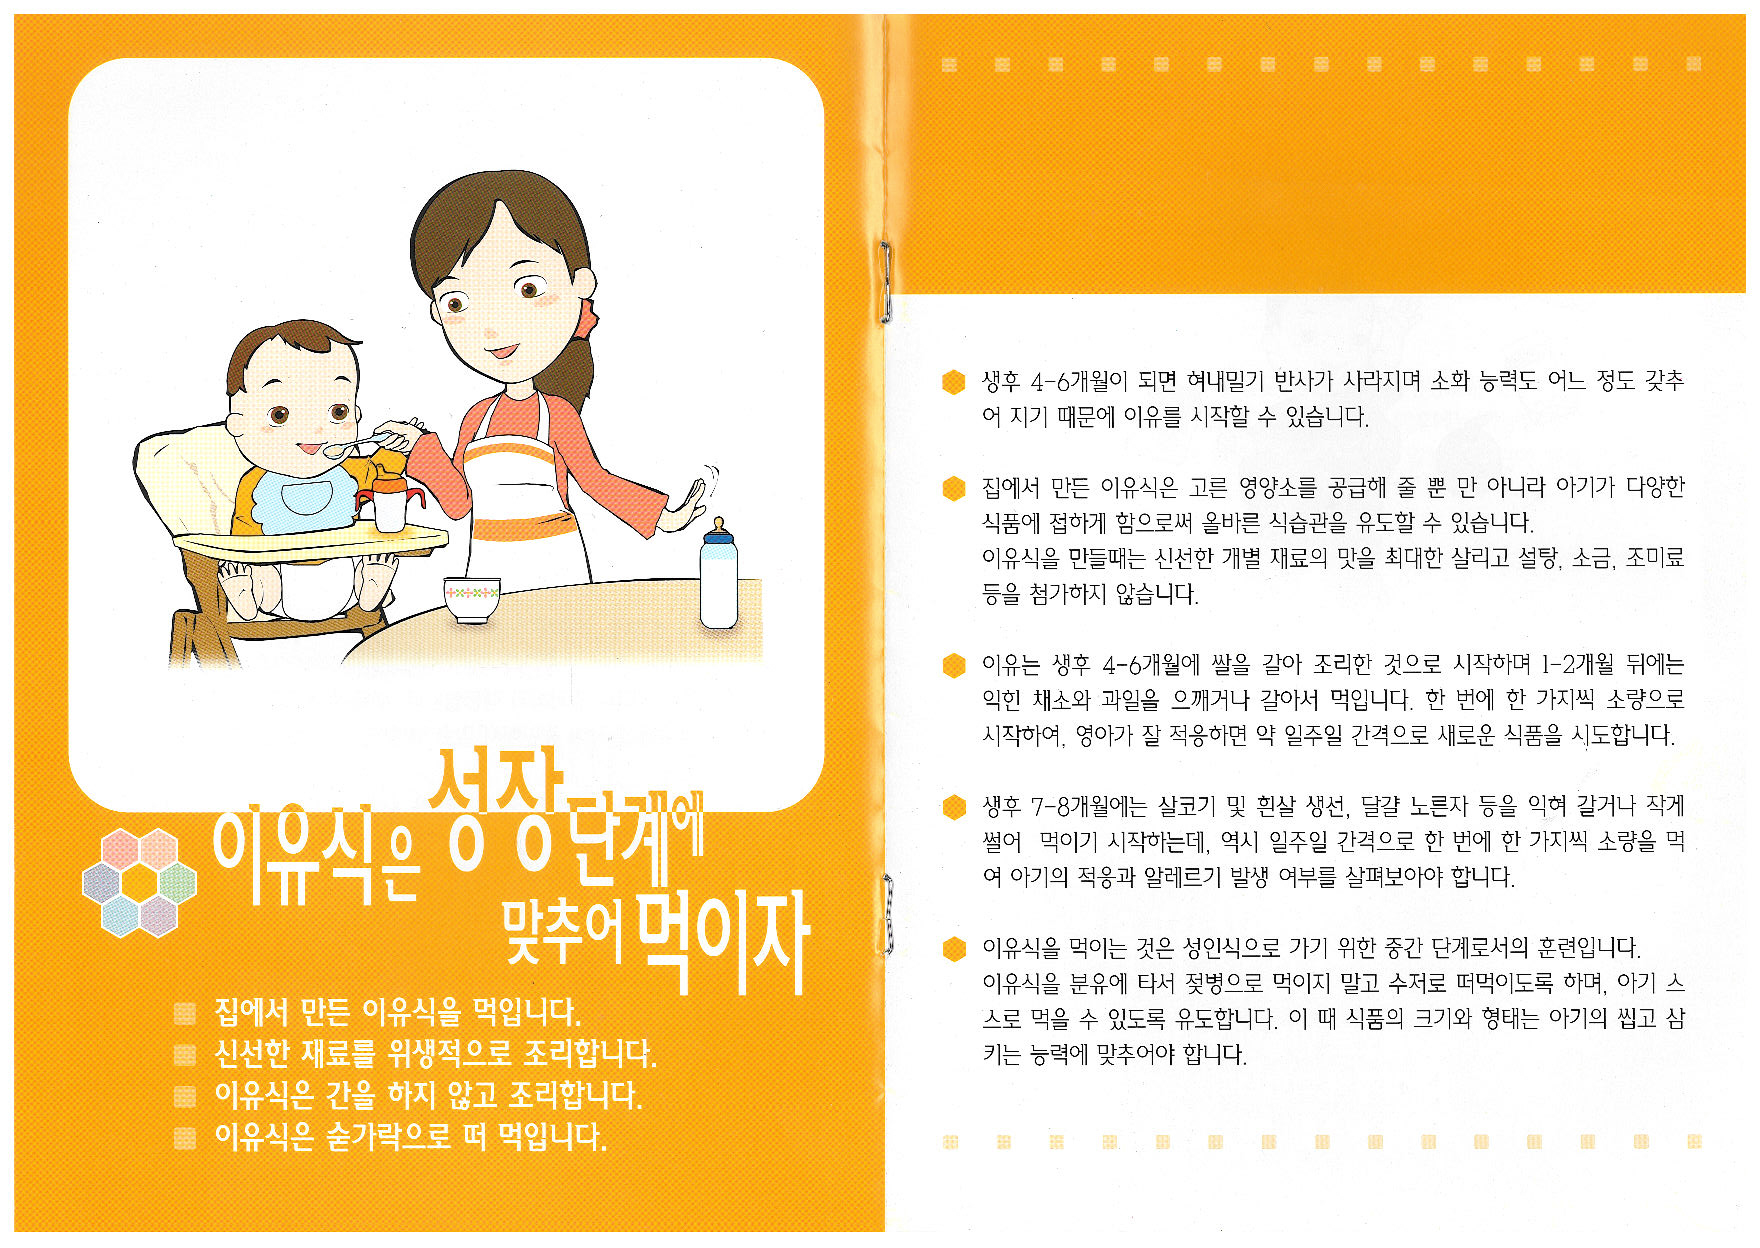 영유아를 위한 식생활 실천지침(2)